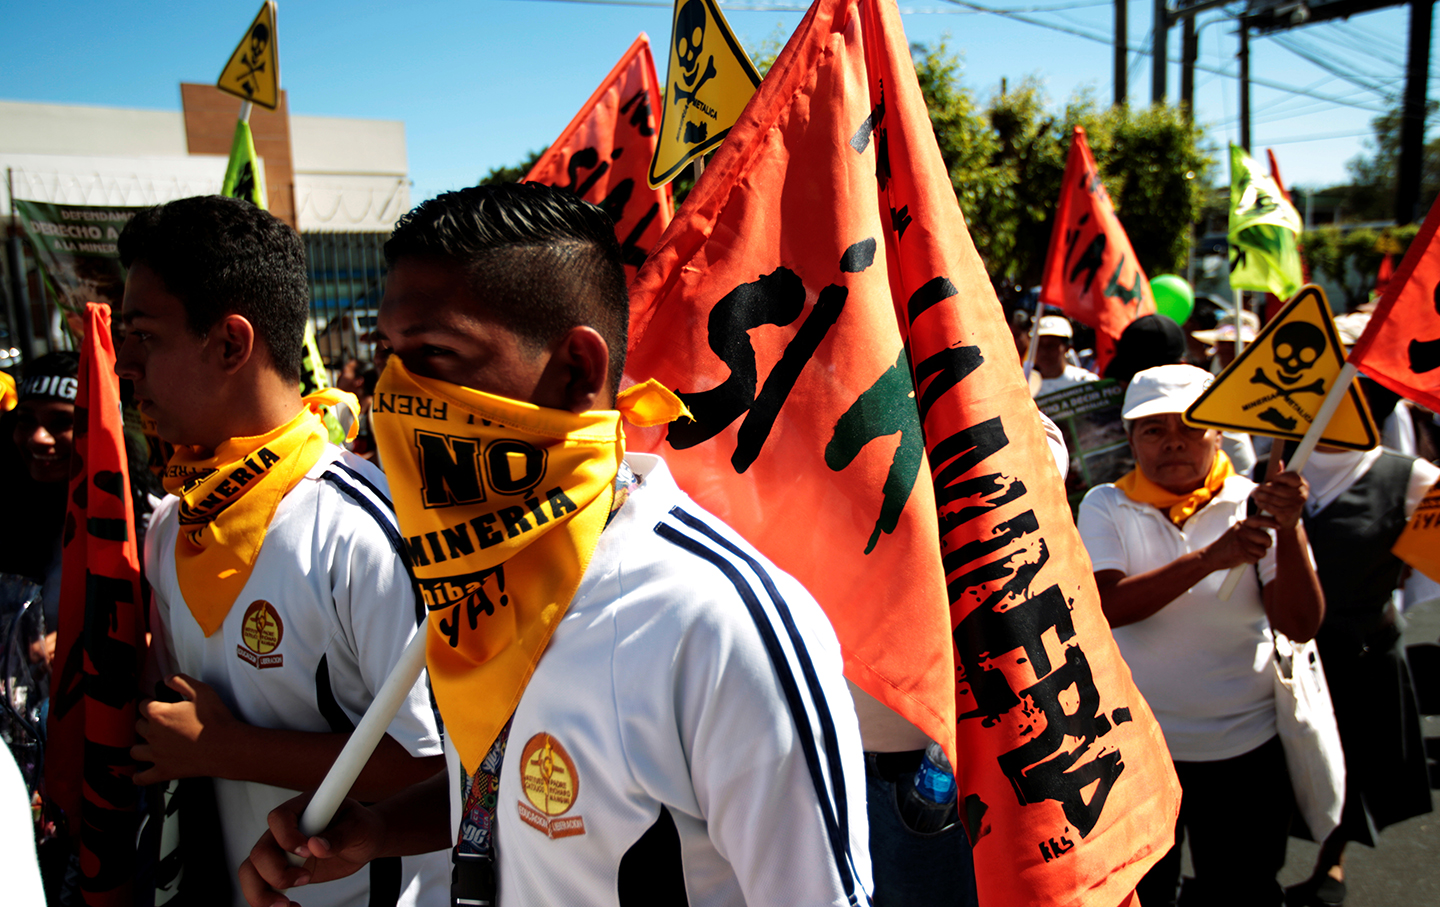 Mining protests in El Salvador